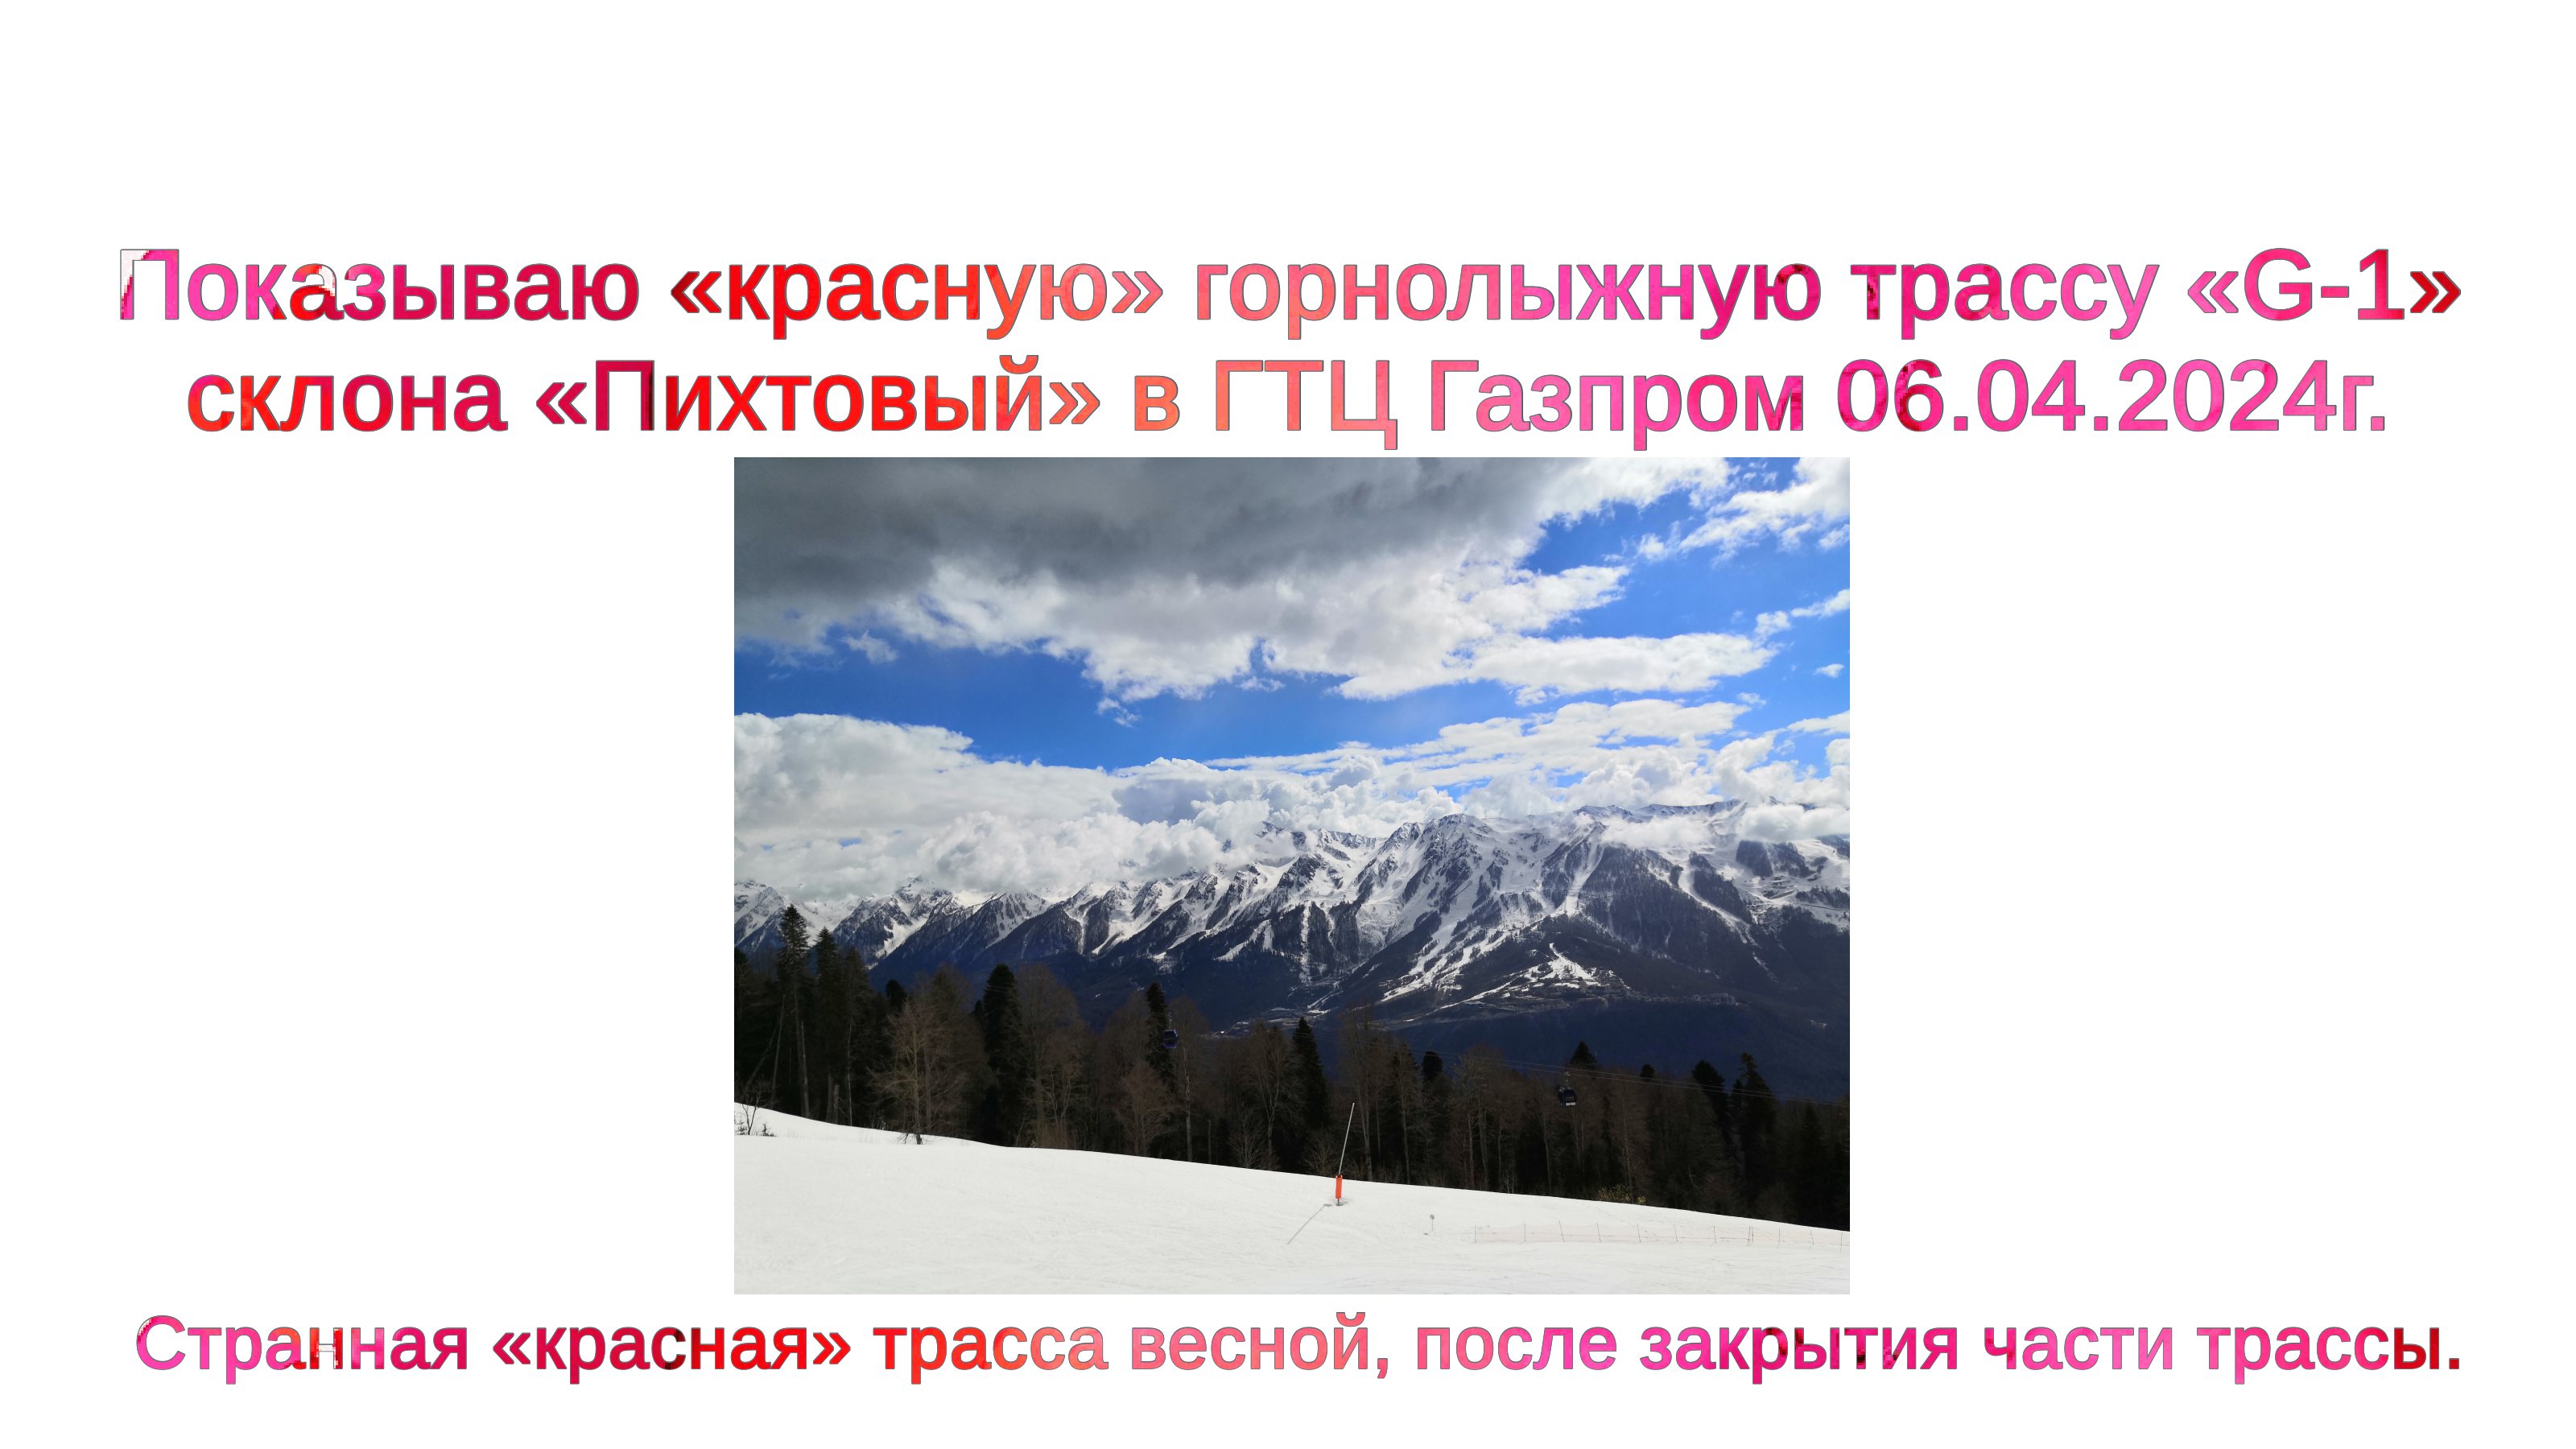 Показываю «красную» горнолыжную трассу «G-1» склона «Пихтовый» в ГТЦ Газпром 06.04.2024г.